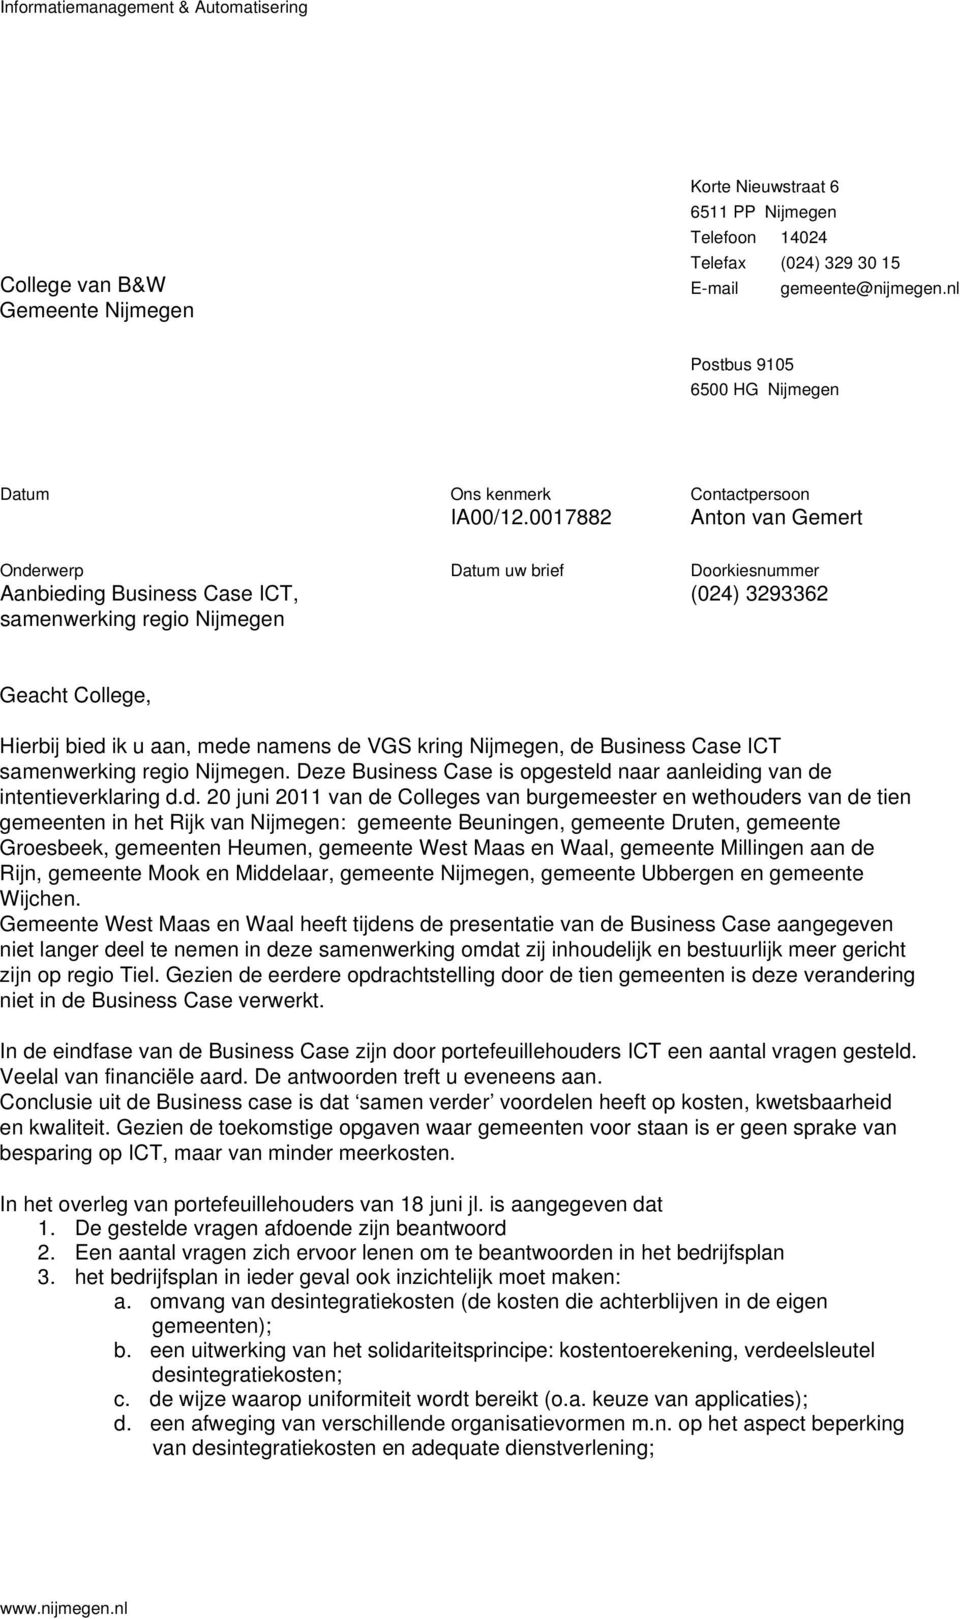 0017882 Contactpersoon Anton van Gemert Onderwerp Aanbieding Business Case ICT, samenwerking regio Nijmegen uw brief Doorkiesnummer (024) 3293362 Geacht College, Hierbij bied ik u aan, mede namens de